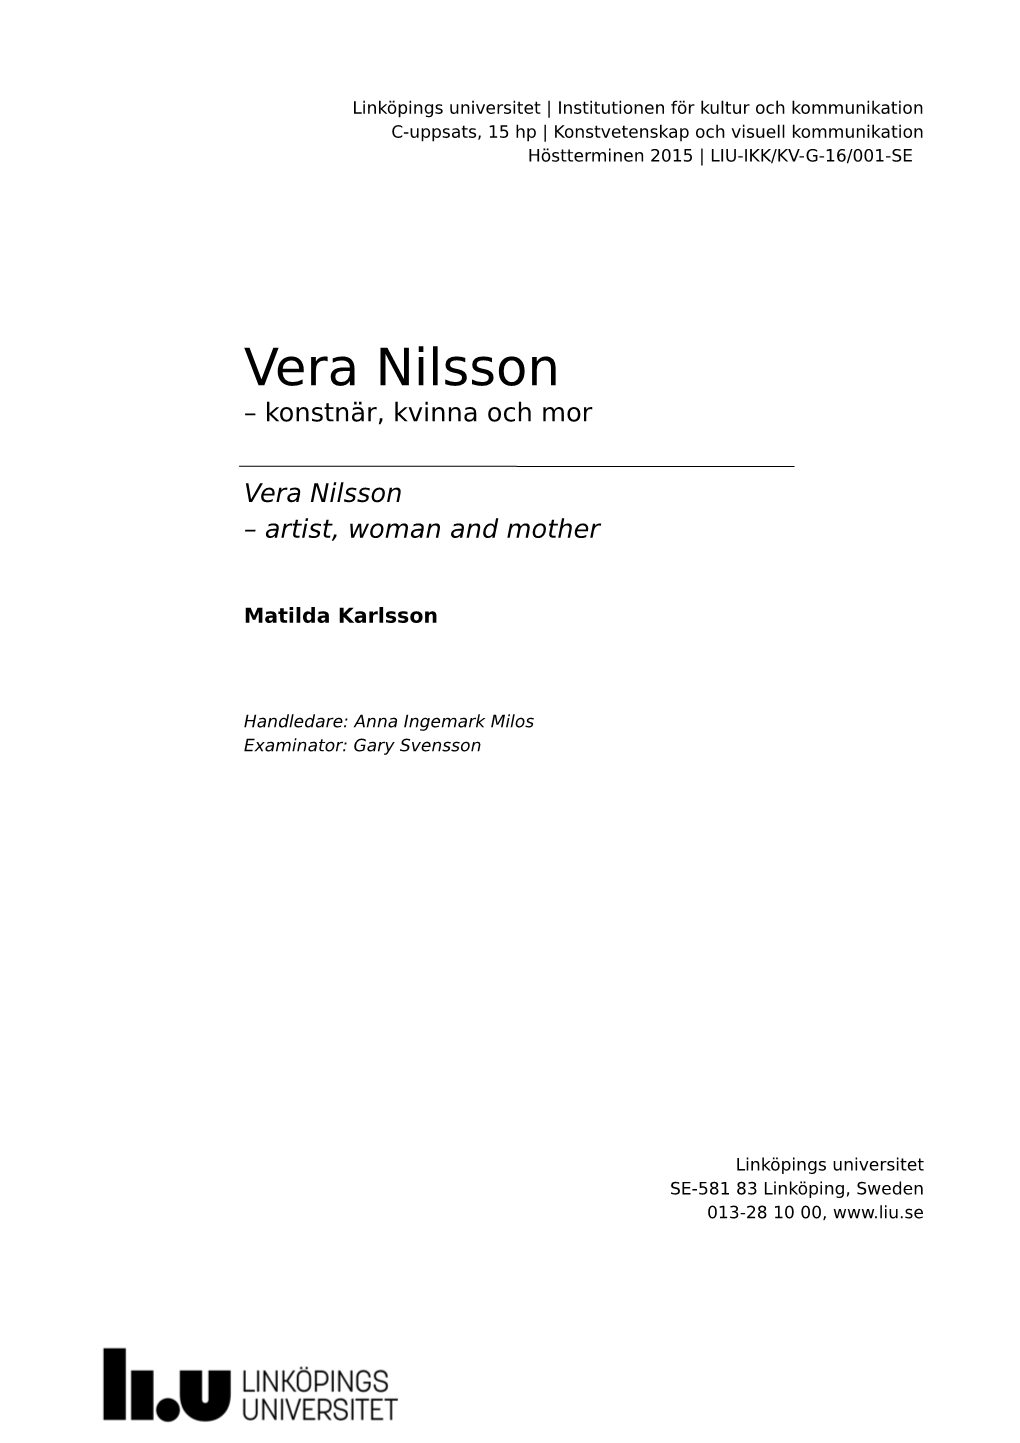 Vera Nilsson – Konstnär, Kvinna Och Mor